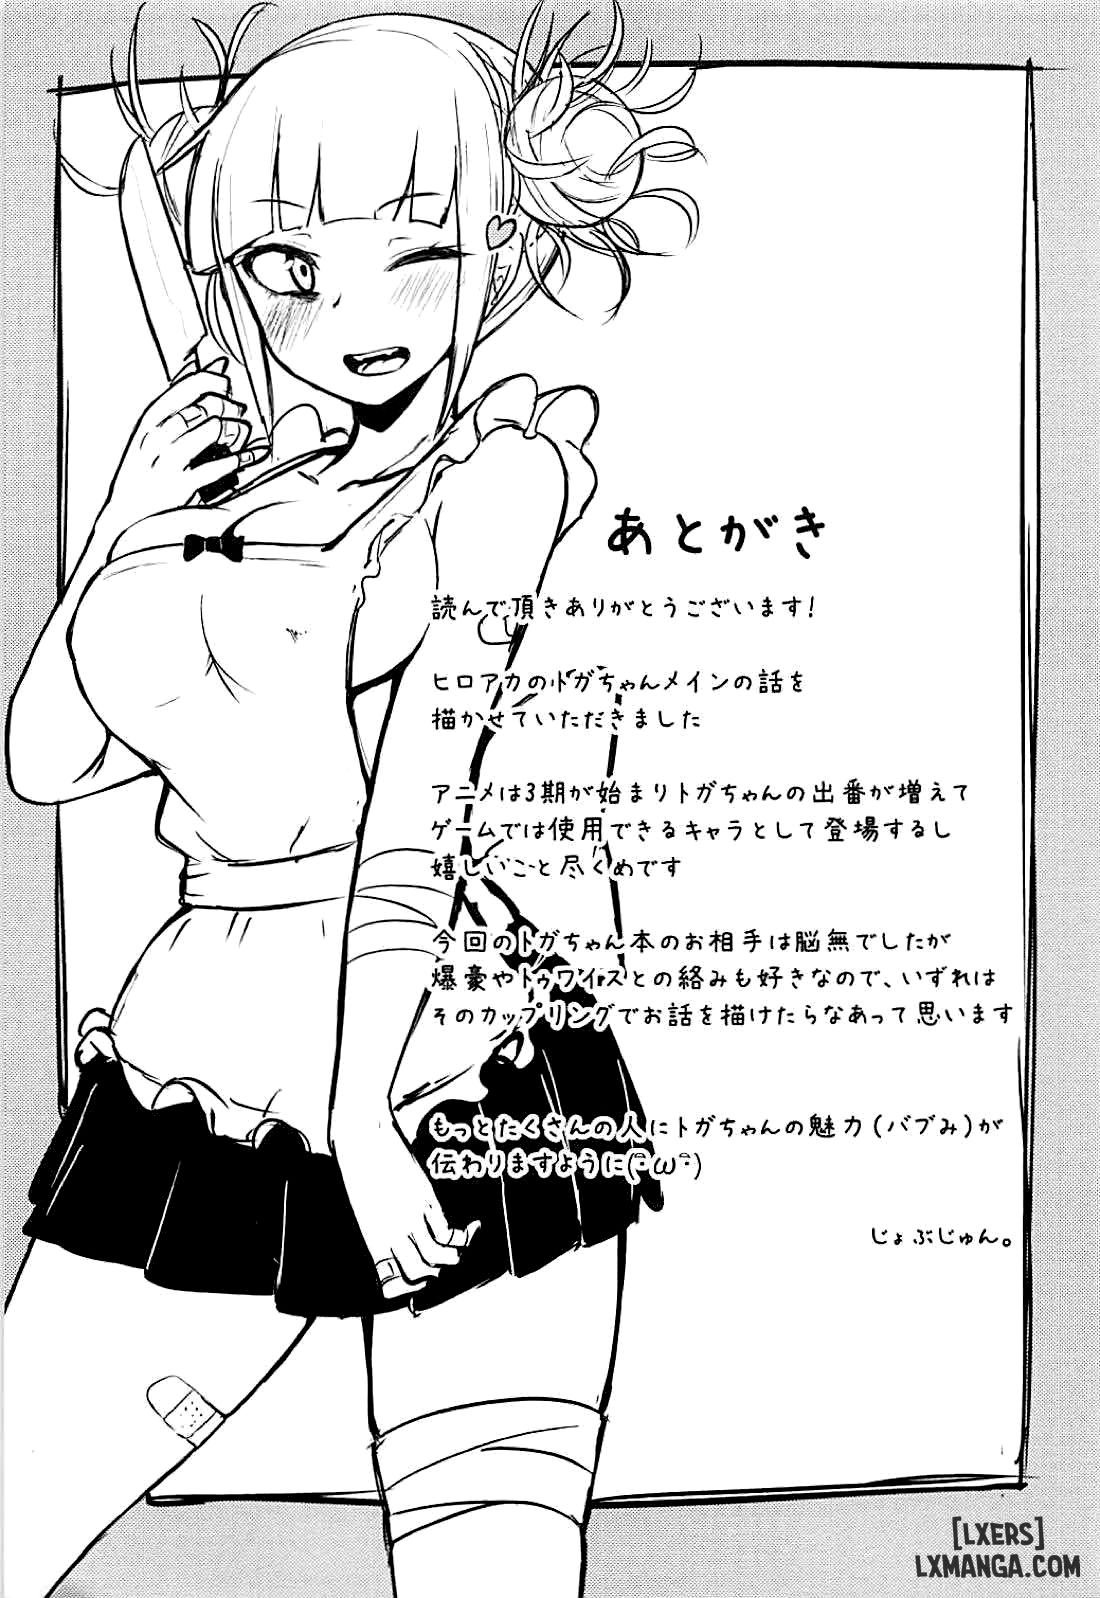 Toga Himiko no Chiuchiu Academia Chương Oneshot Trang 20